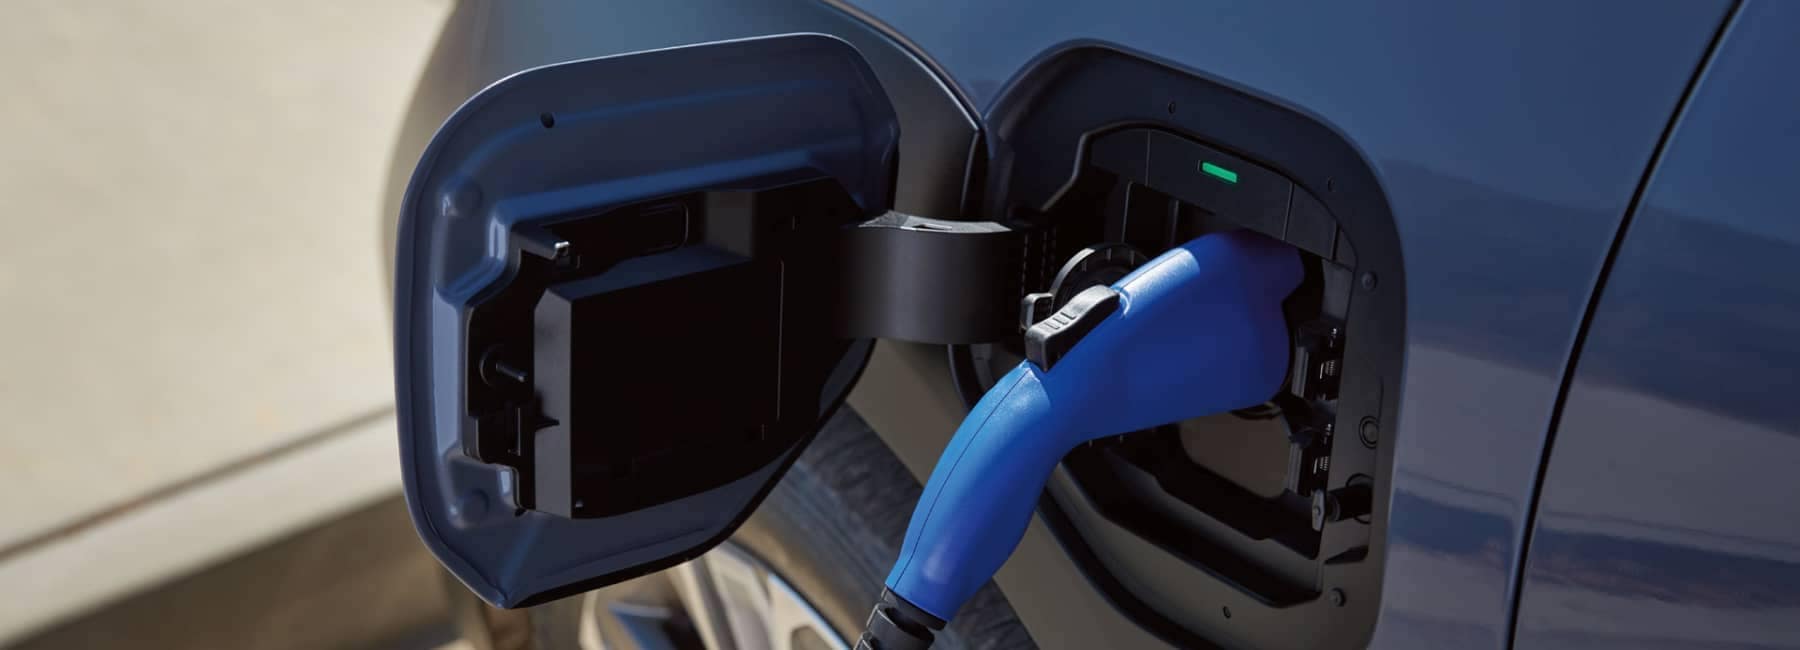 2022 Subaru Solterra-closeup charge area and plug